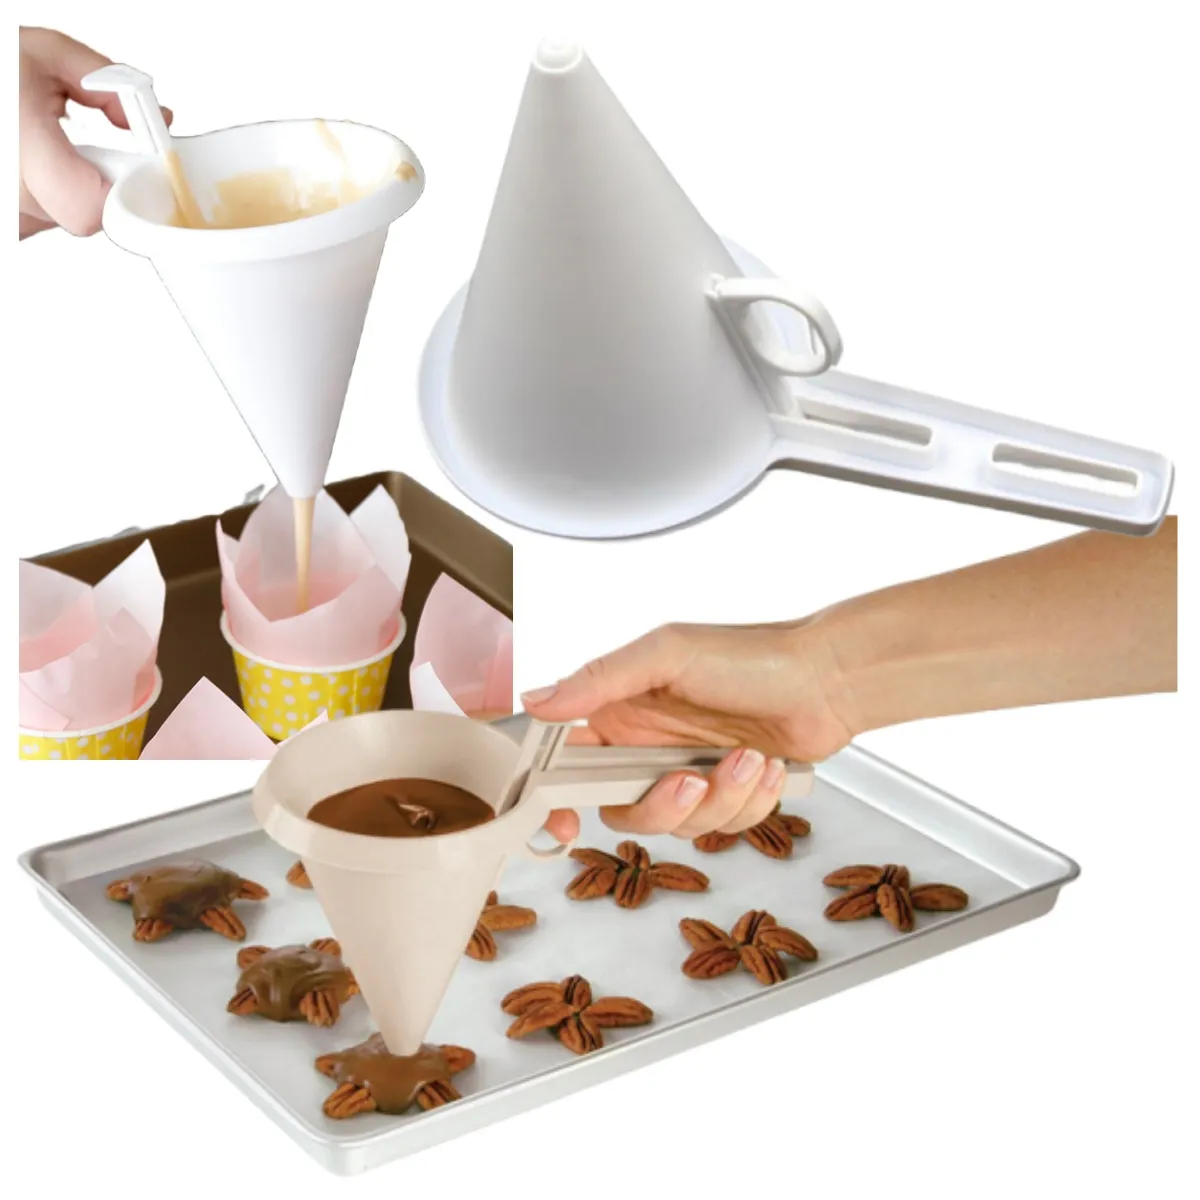 Venda quente copo de mão ferramenta de cozimento creme sorvete chocolate dispensador funil de massa